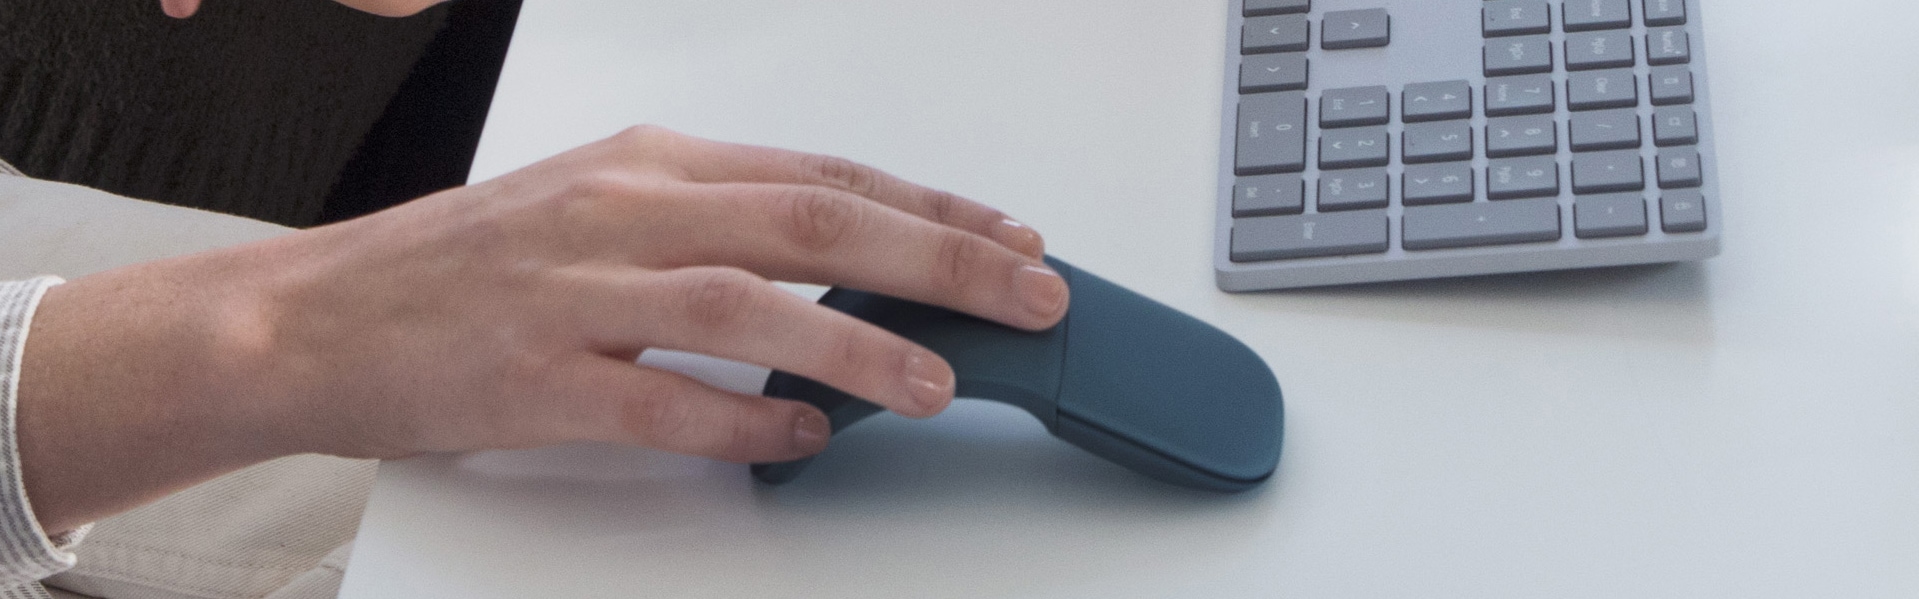 شخص يستخدم ماوس Surface Arc Mouse باللون الأزرق الكوبالت